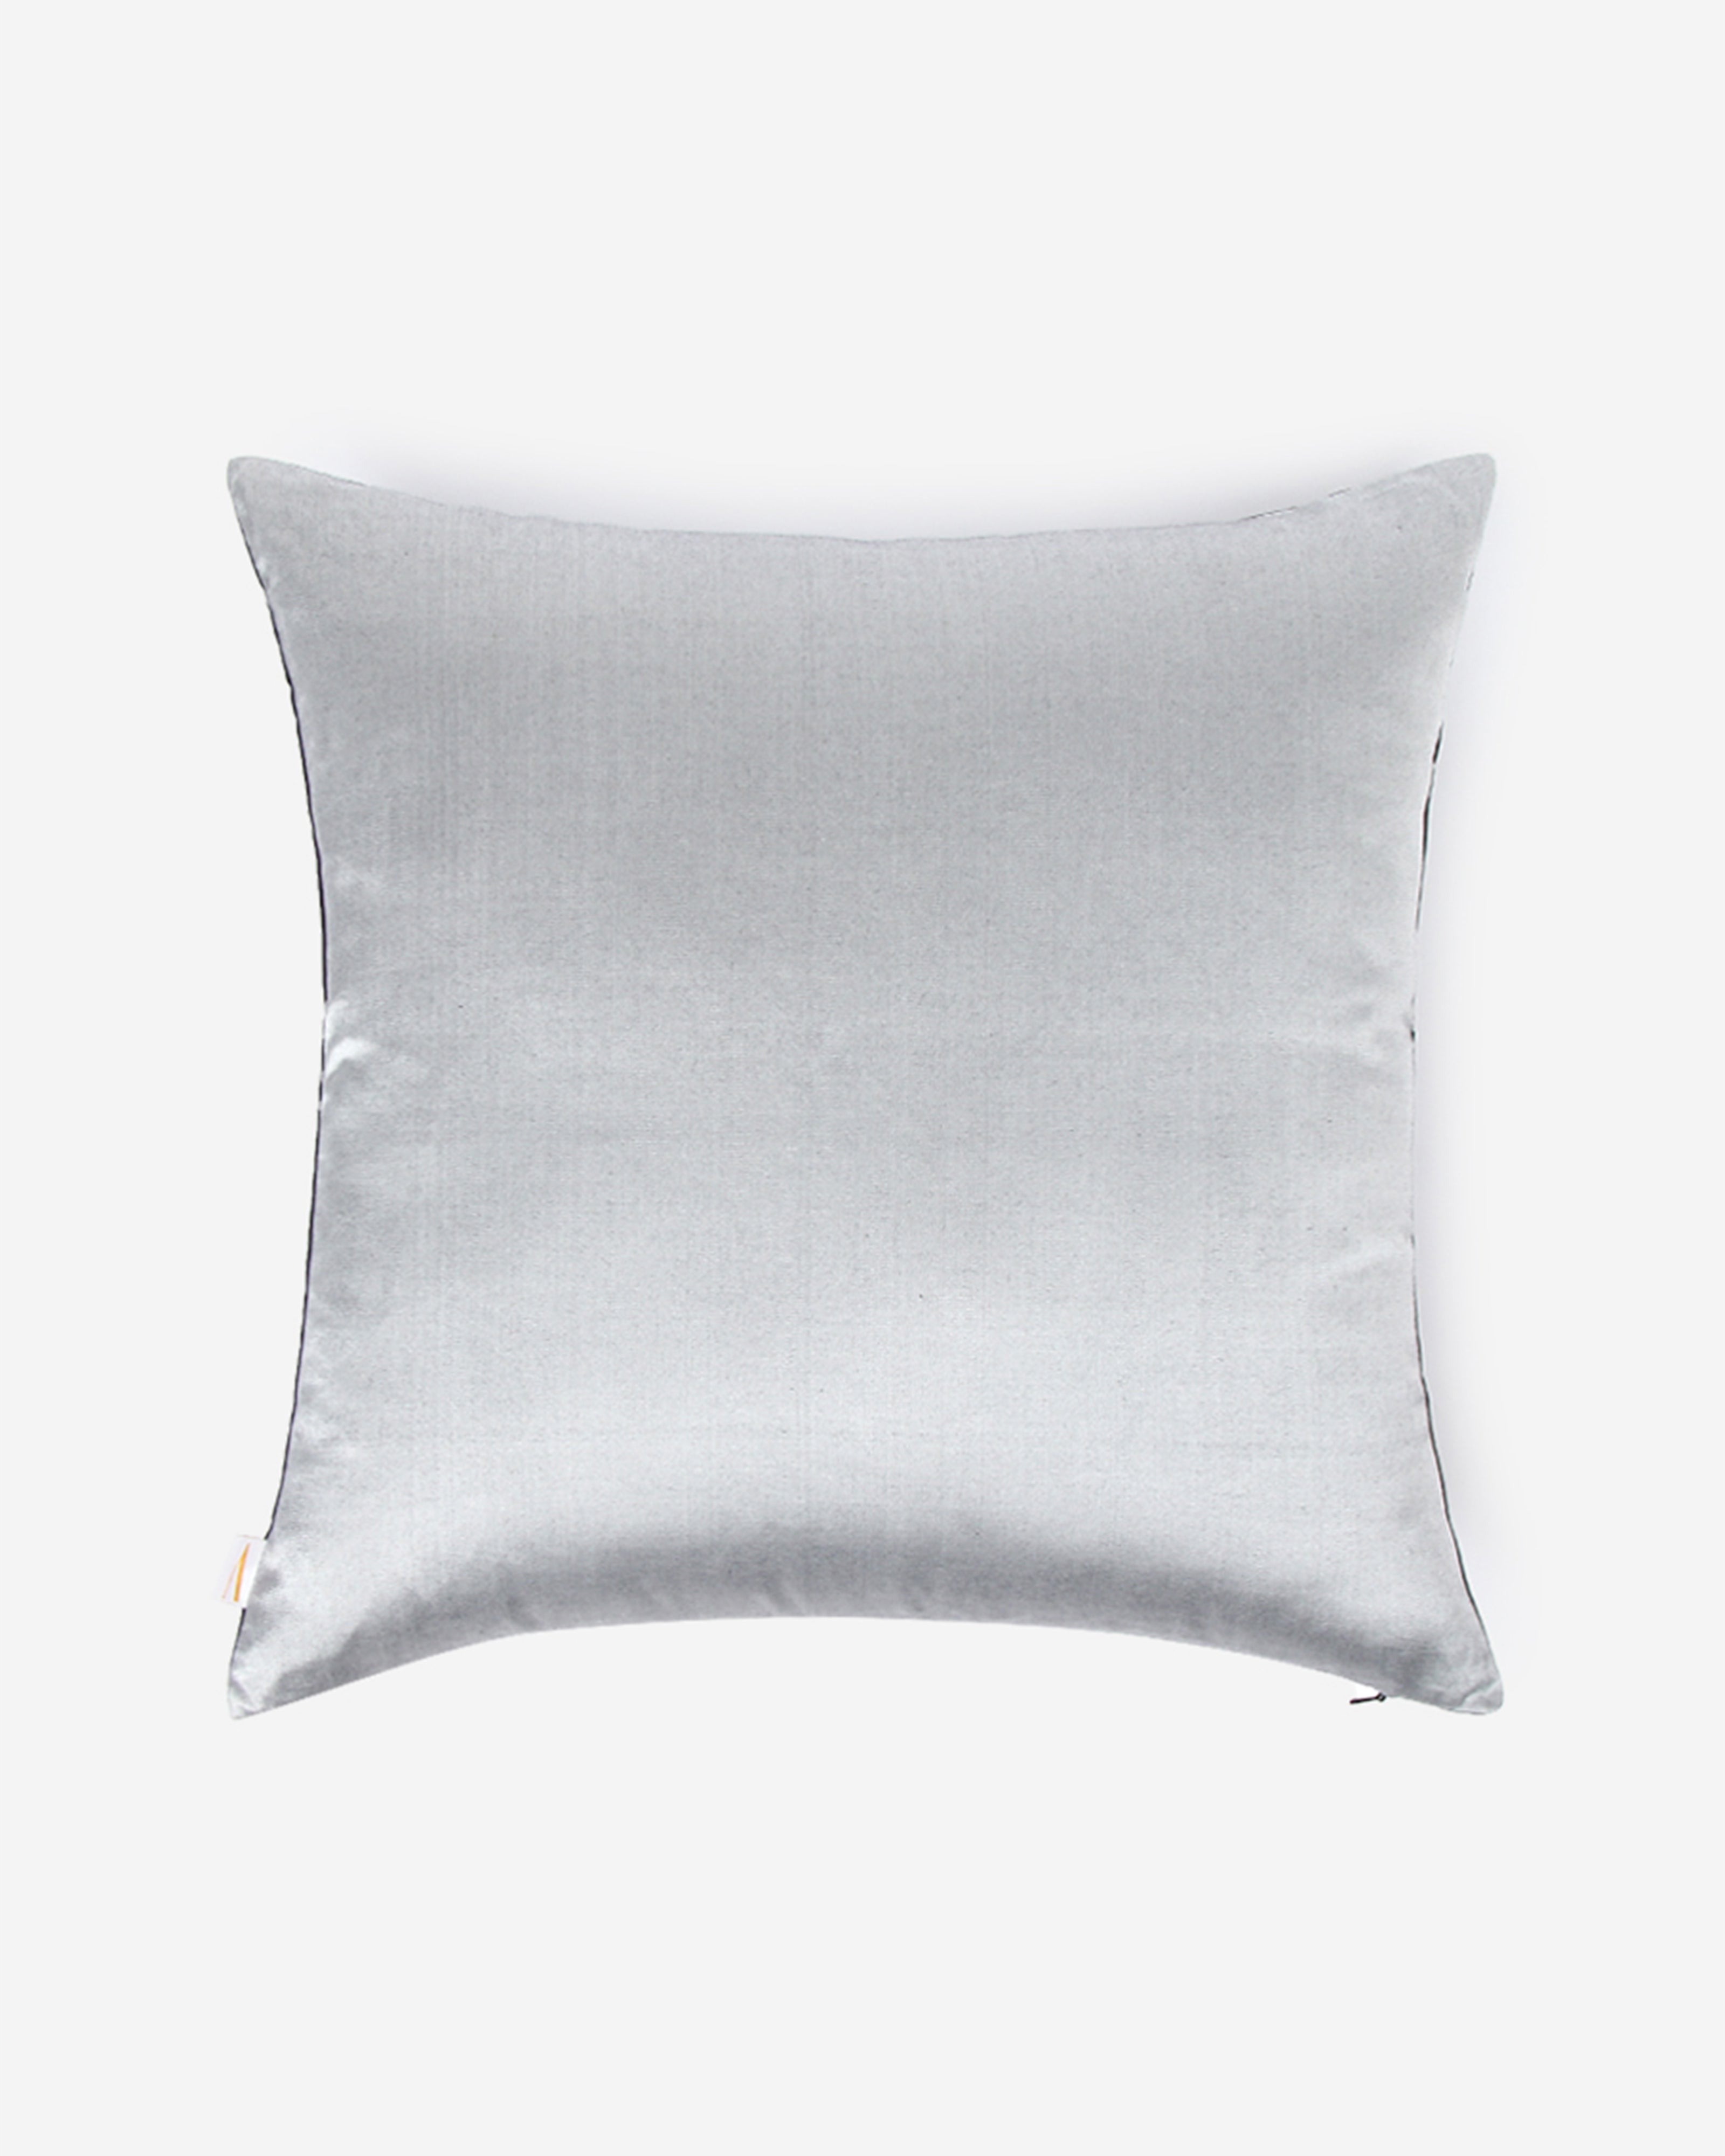 Barfi Satin Brocade Silk Cushion Cover